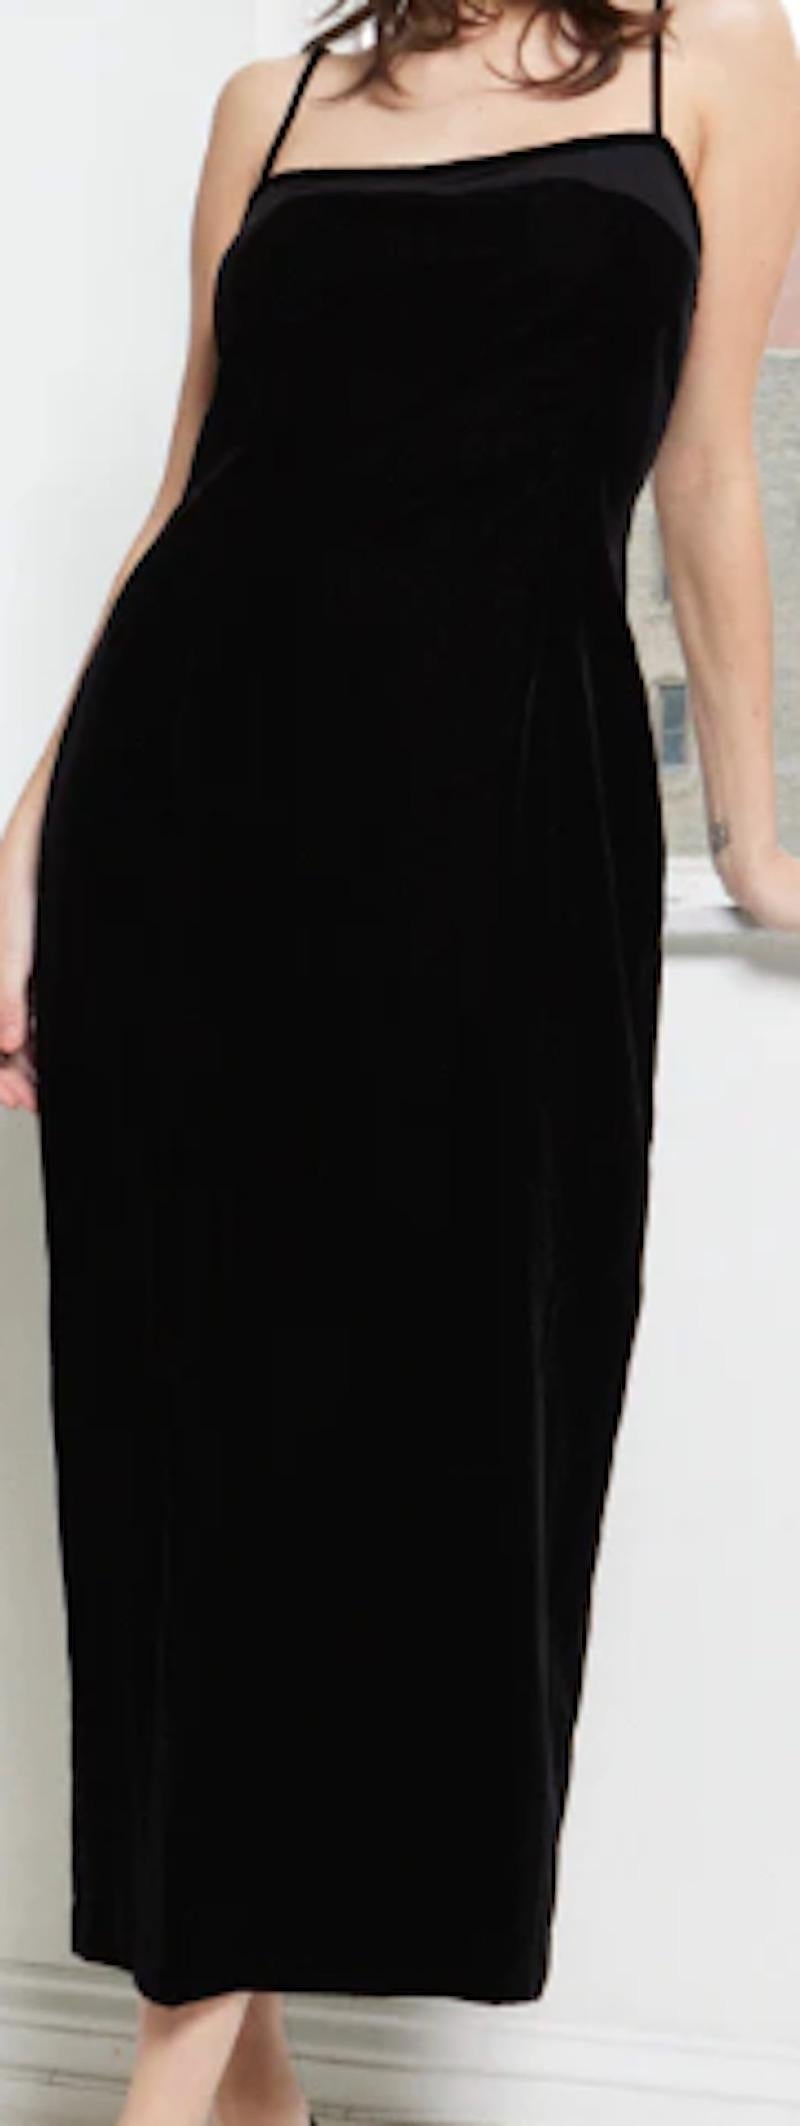 Calvin Klein 1990s Velvet Slip Dress In Excellent Condition For Sale In New York, NY